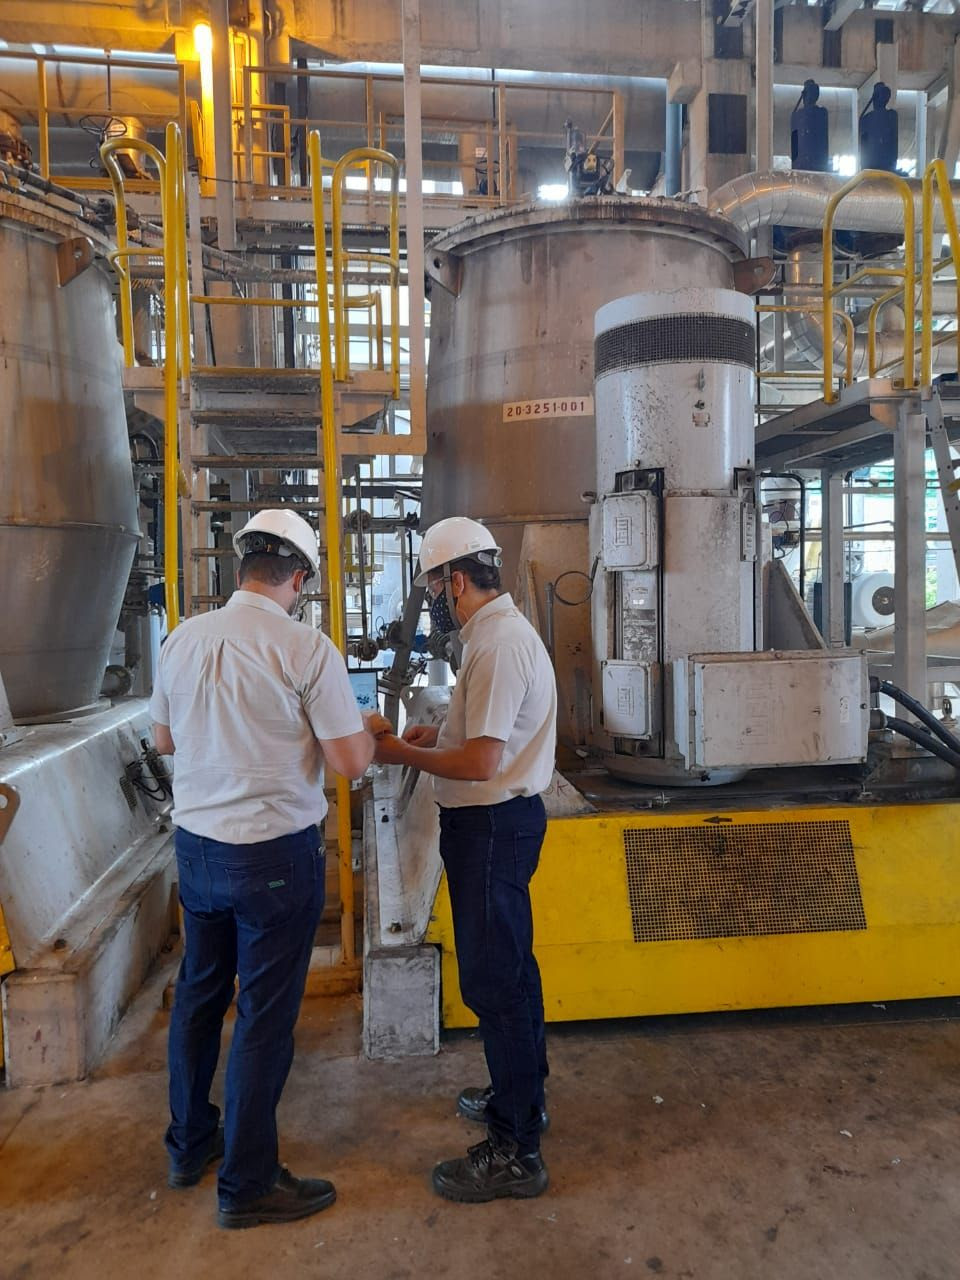 Equipe da Veracel Celulose utilizando a tecnologia de predição de falhas nas máquinas industriais de sua fábrica, localizada em Eunápolis, na Bahia